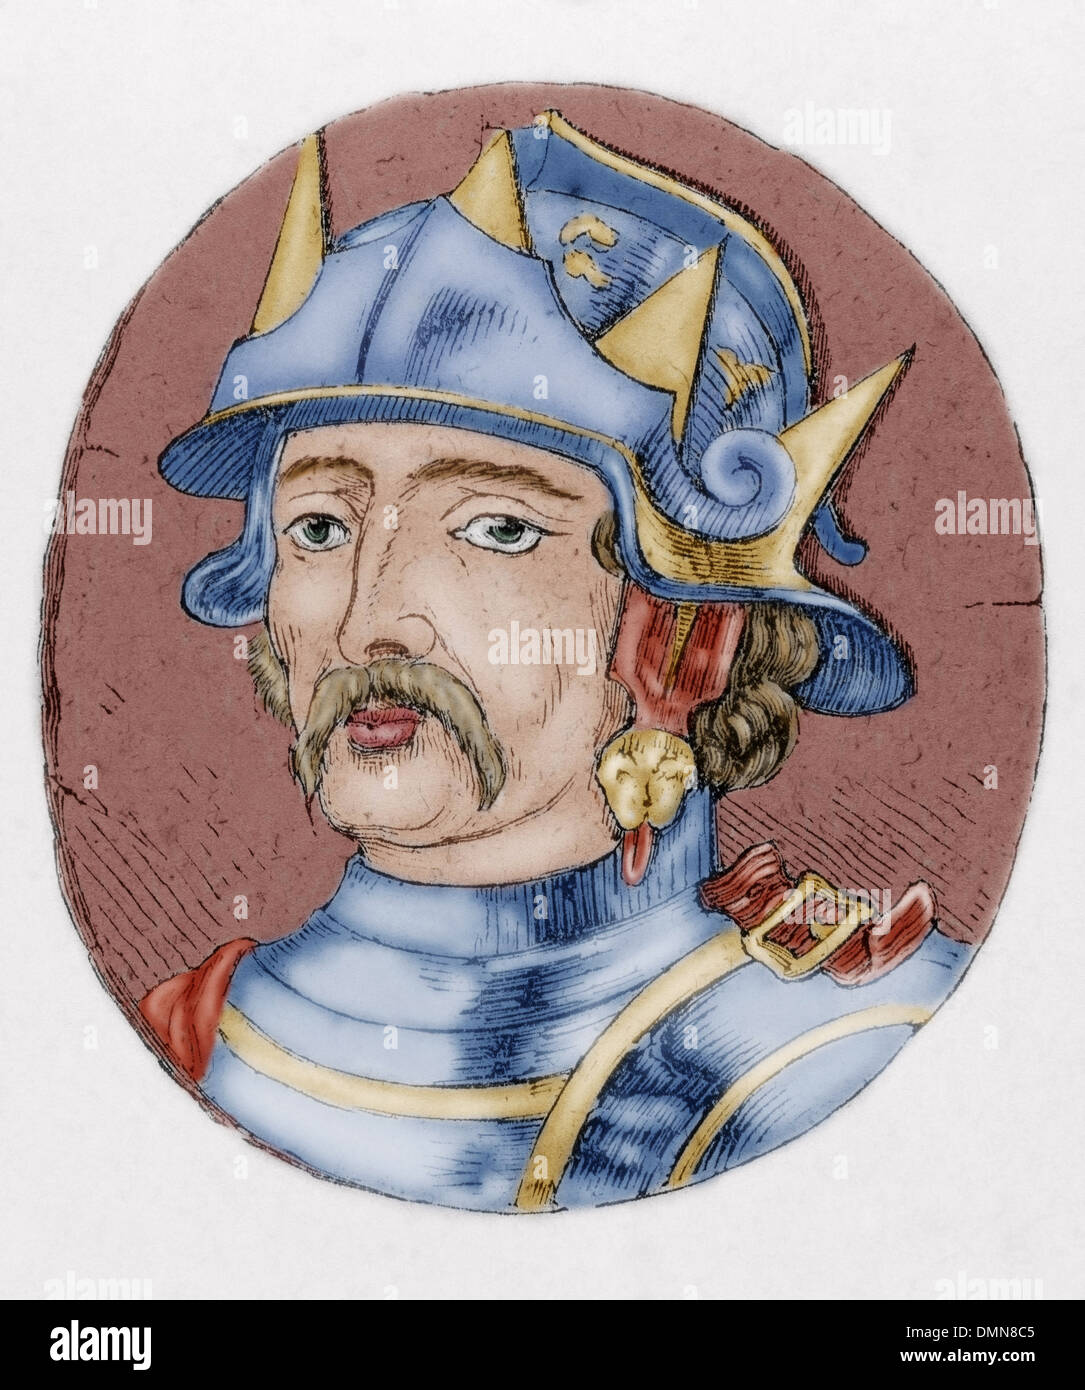 Ramiro II de Leon (900-951). Roi de Leon à partir de 931-951. La gravure. De couleur. Banque D'Images